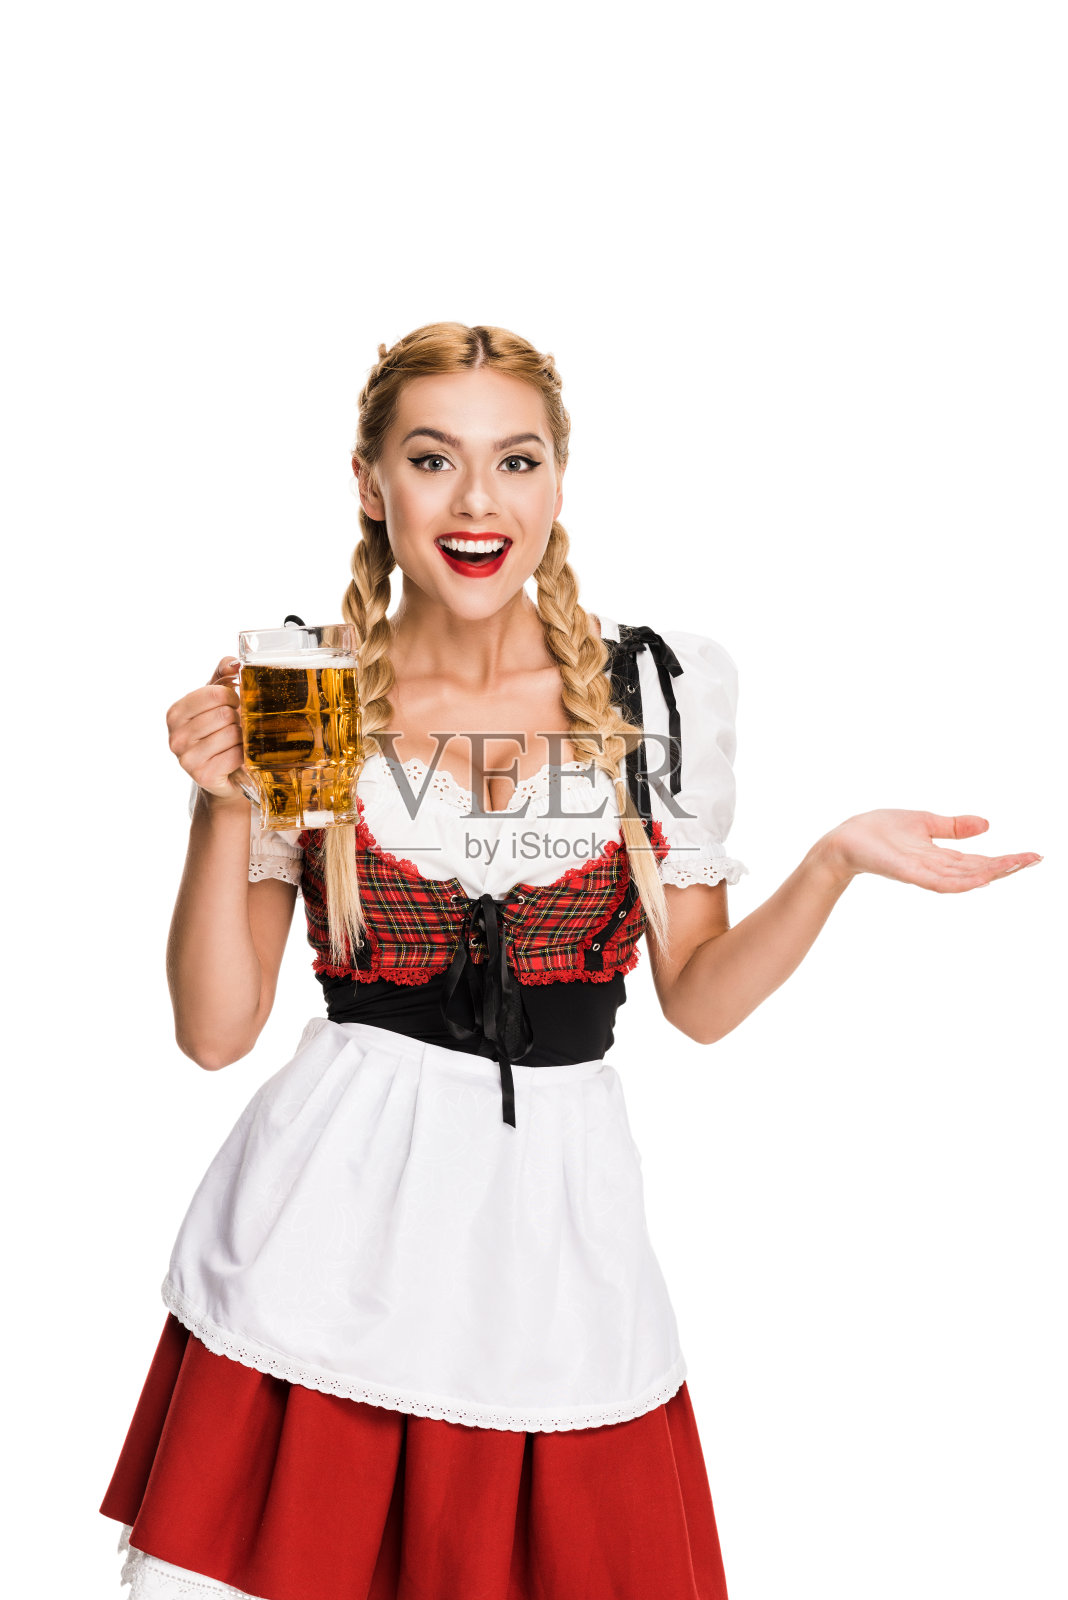 啤酒节上喝啤酒的女服务员照片摄影图片